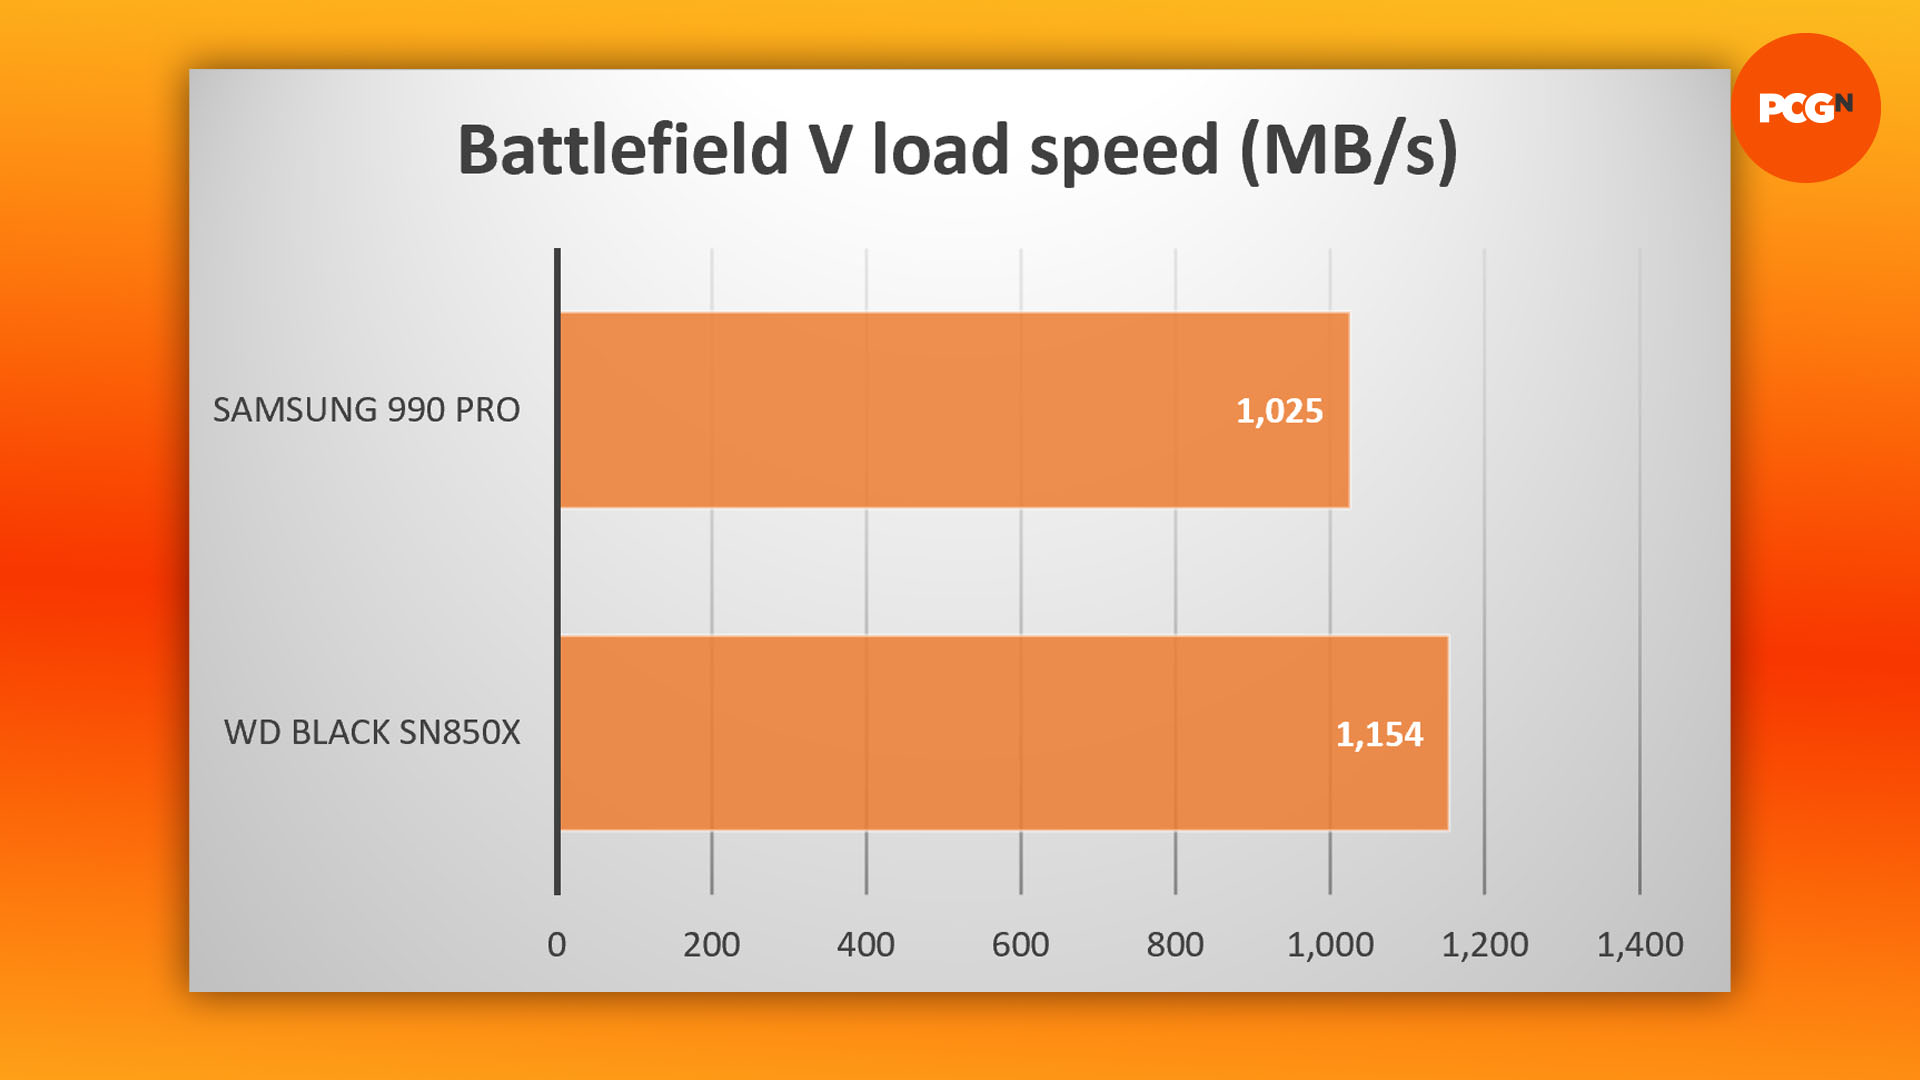 WD Black SN850X incelemesi: Battlefield V oyun yükleme sonuçları grafiği